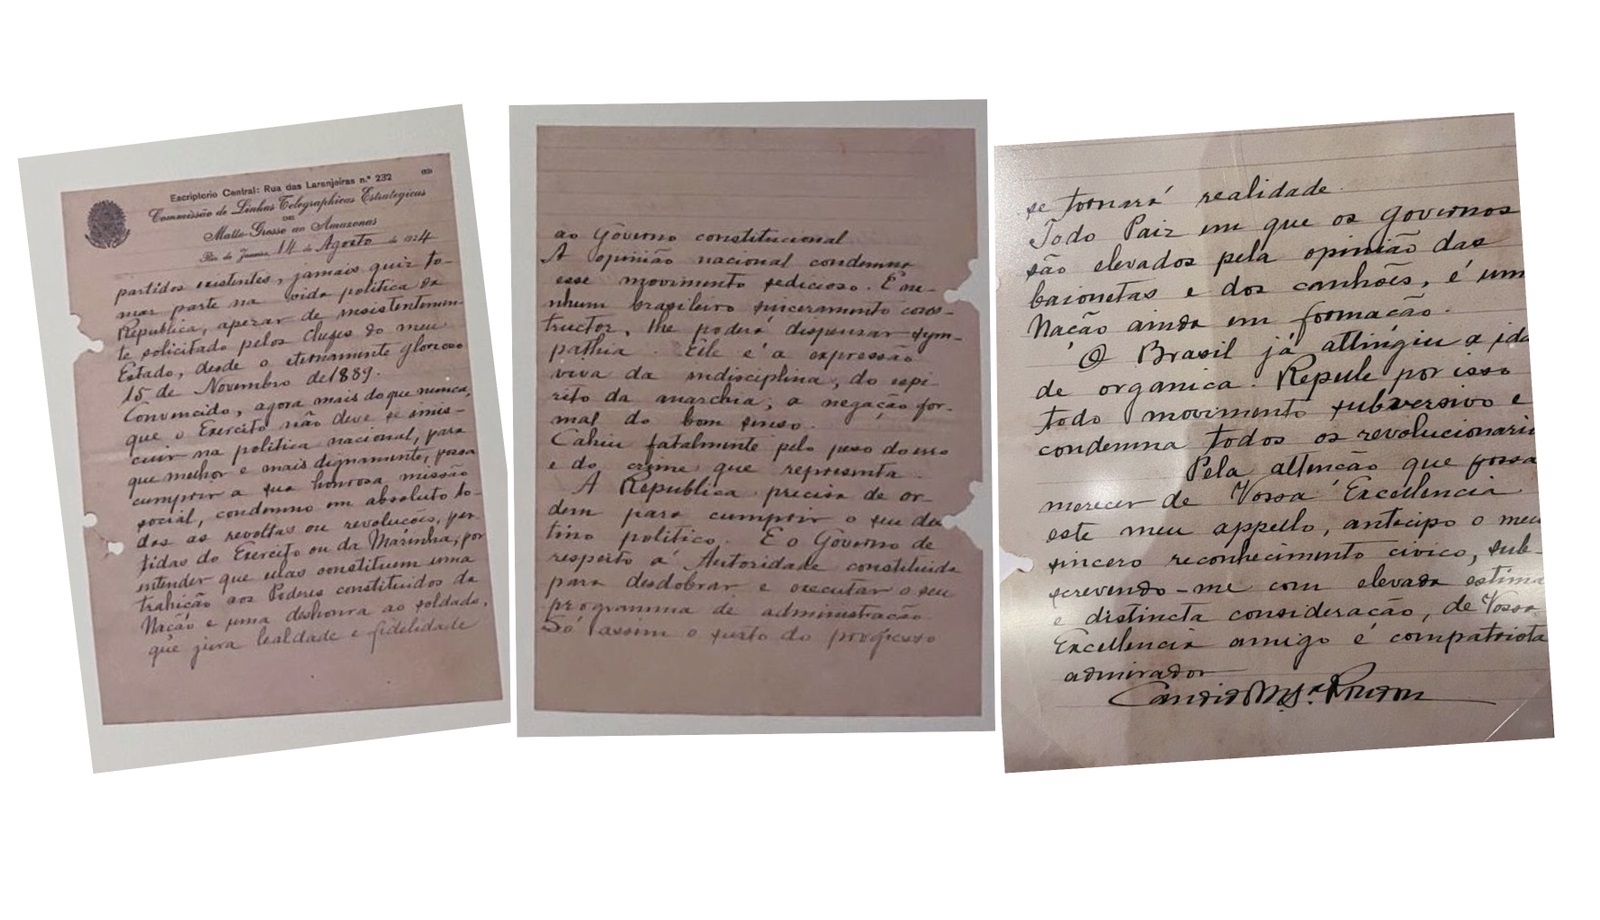 ACERVO: Em Manuscrito raro, Rondon condena partidarização do Exército